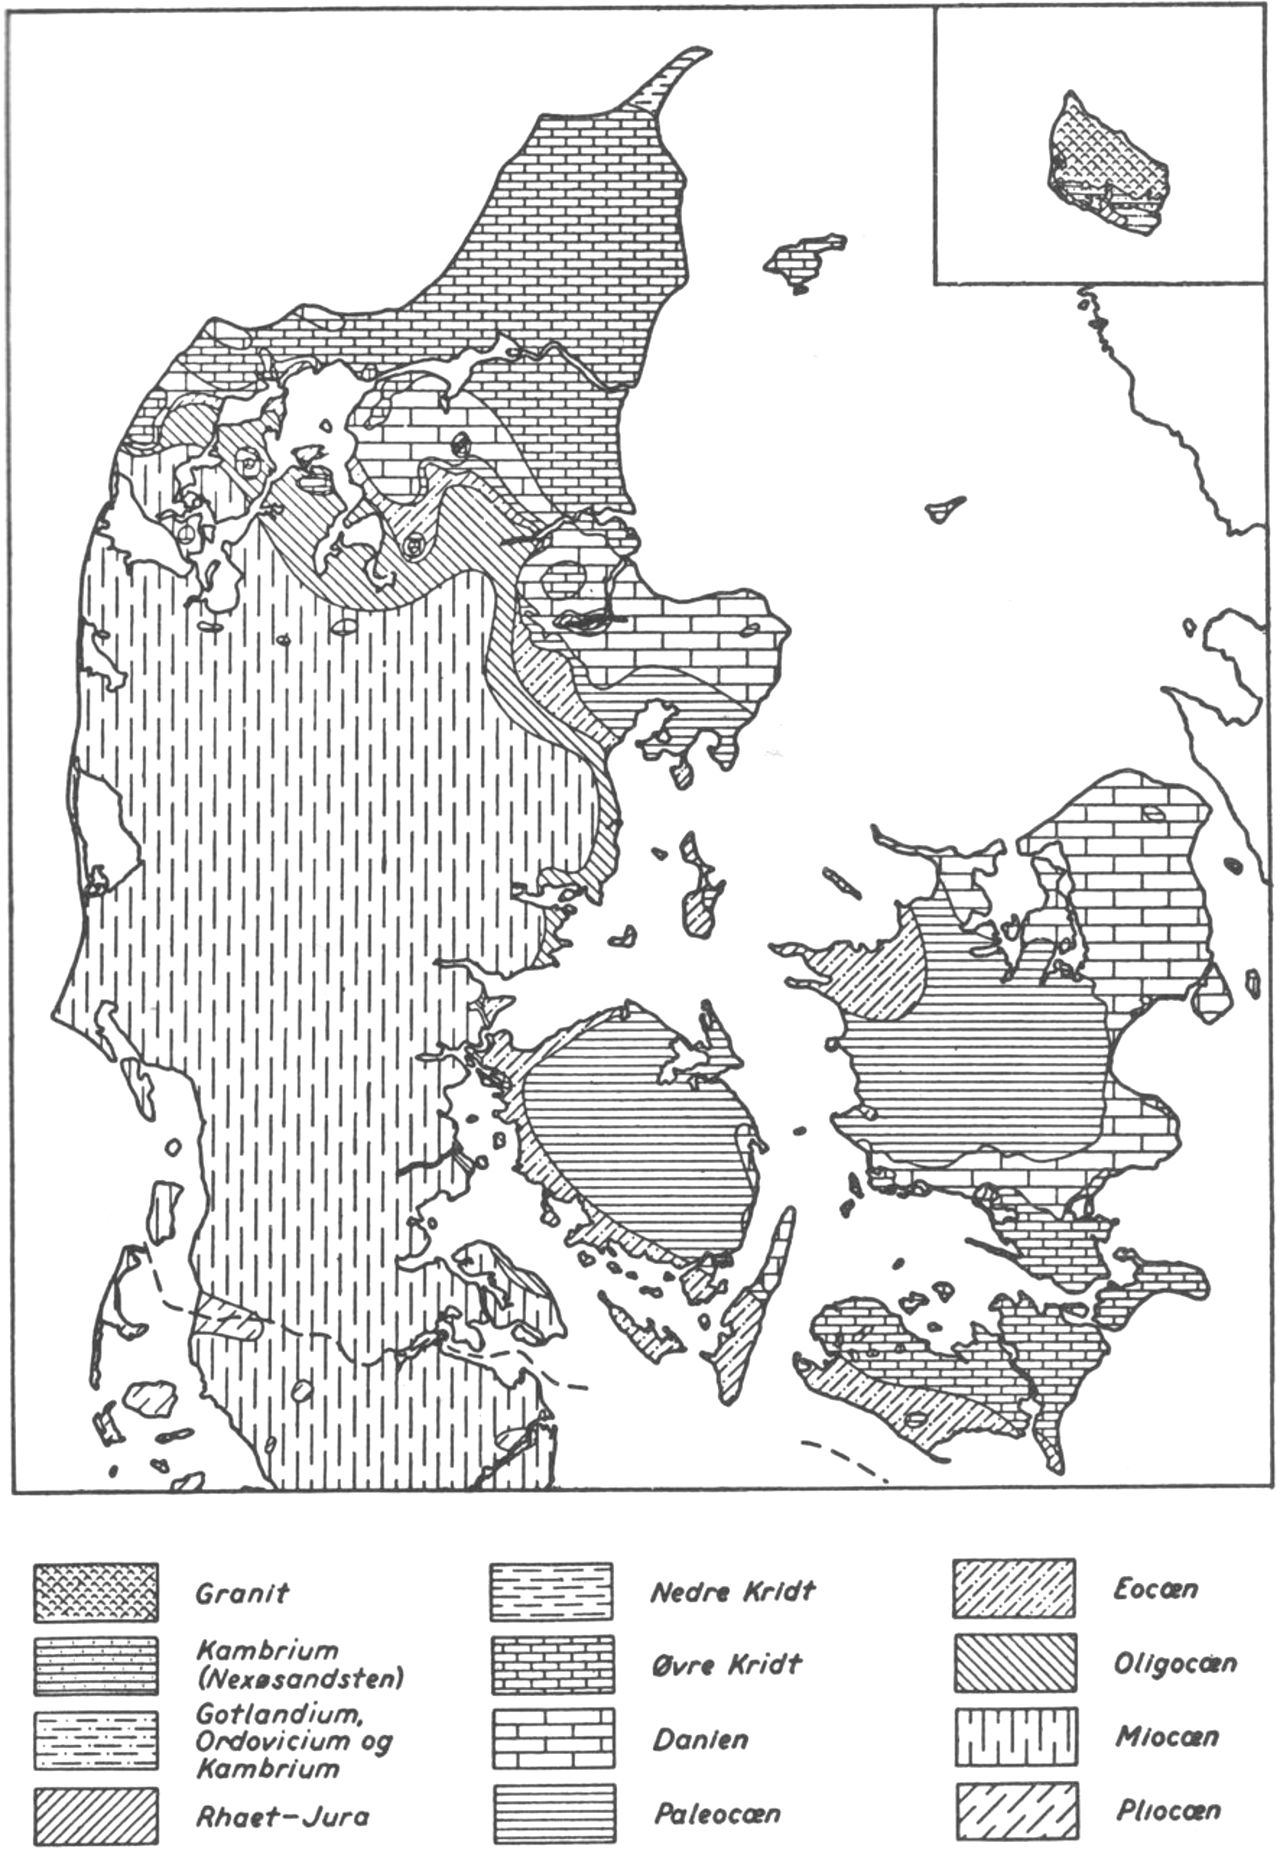 (Kort). Geologisk kort over Danmark.Formationerne ved basis af kvartæret).Målestok ca. 1:2.700.000.(Efter Theodor Sorgenfrei. 1954.)